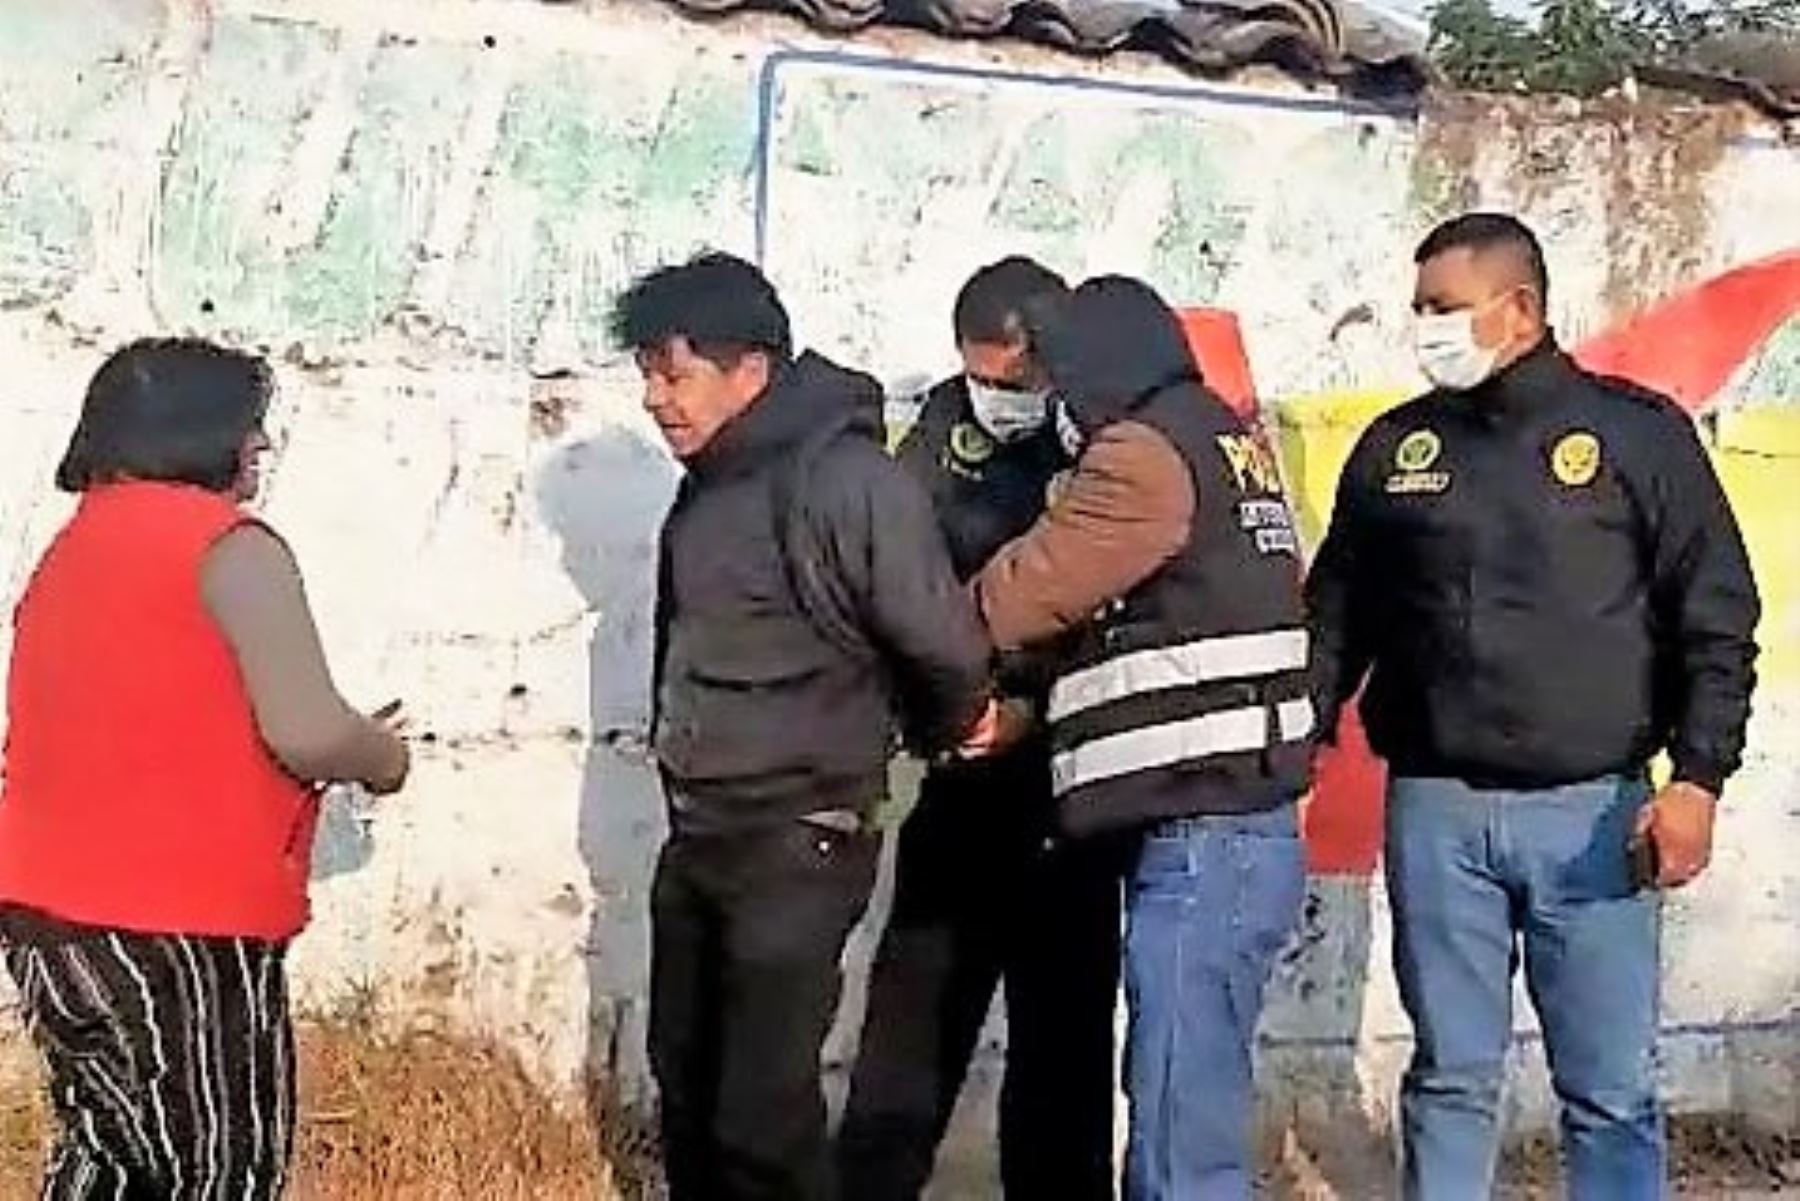 Hugo Fernando Rodríguez Vílchez, feminicida confeso, fue ubicado y capturado por la Policía en el distrito de El Tambo, Huancayo.